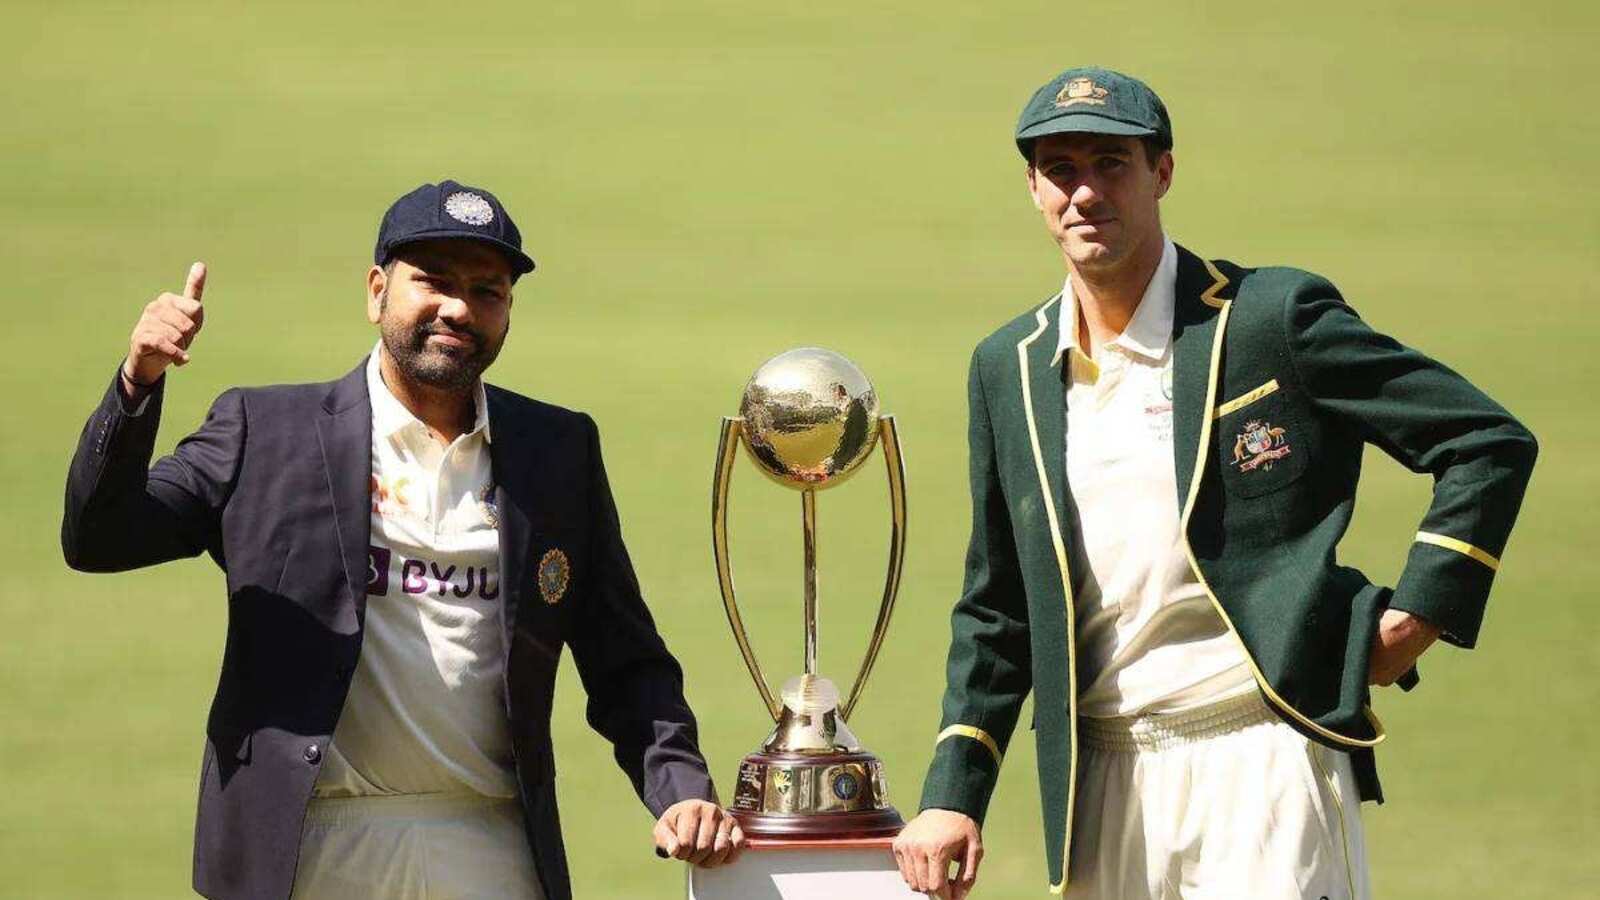 एक बार फिर भारत और ऑस्ट्रेलिया के बीच होगा वर्ल्ड टेस्ट चैंपियनशिप का फाइनल मुकाबला। वेस्टइंडीज को रौंदकर नंबर-1 पर पहुंची टीम इंडिया।